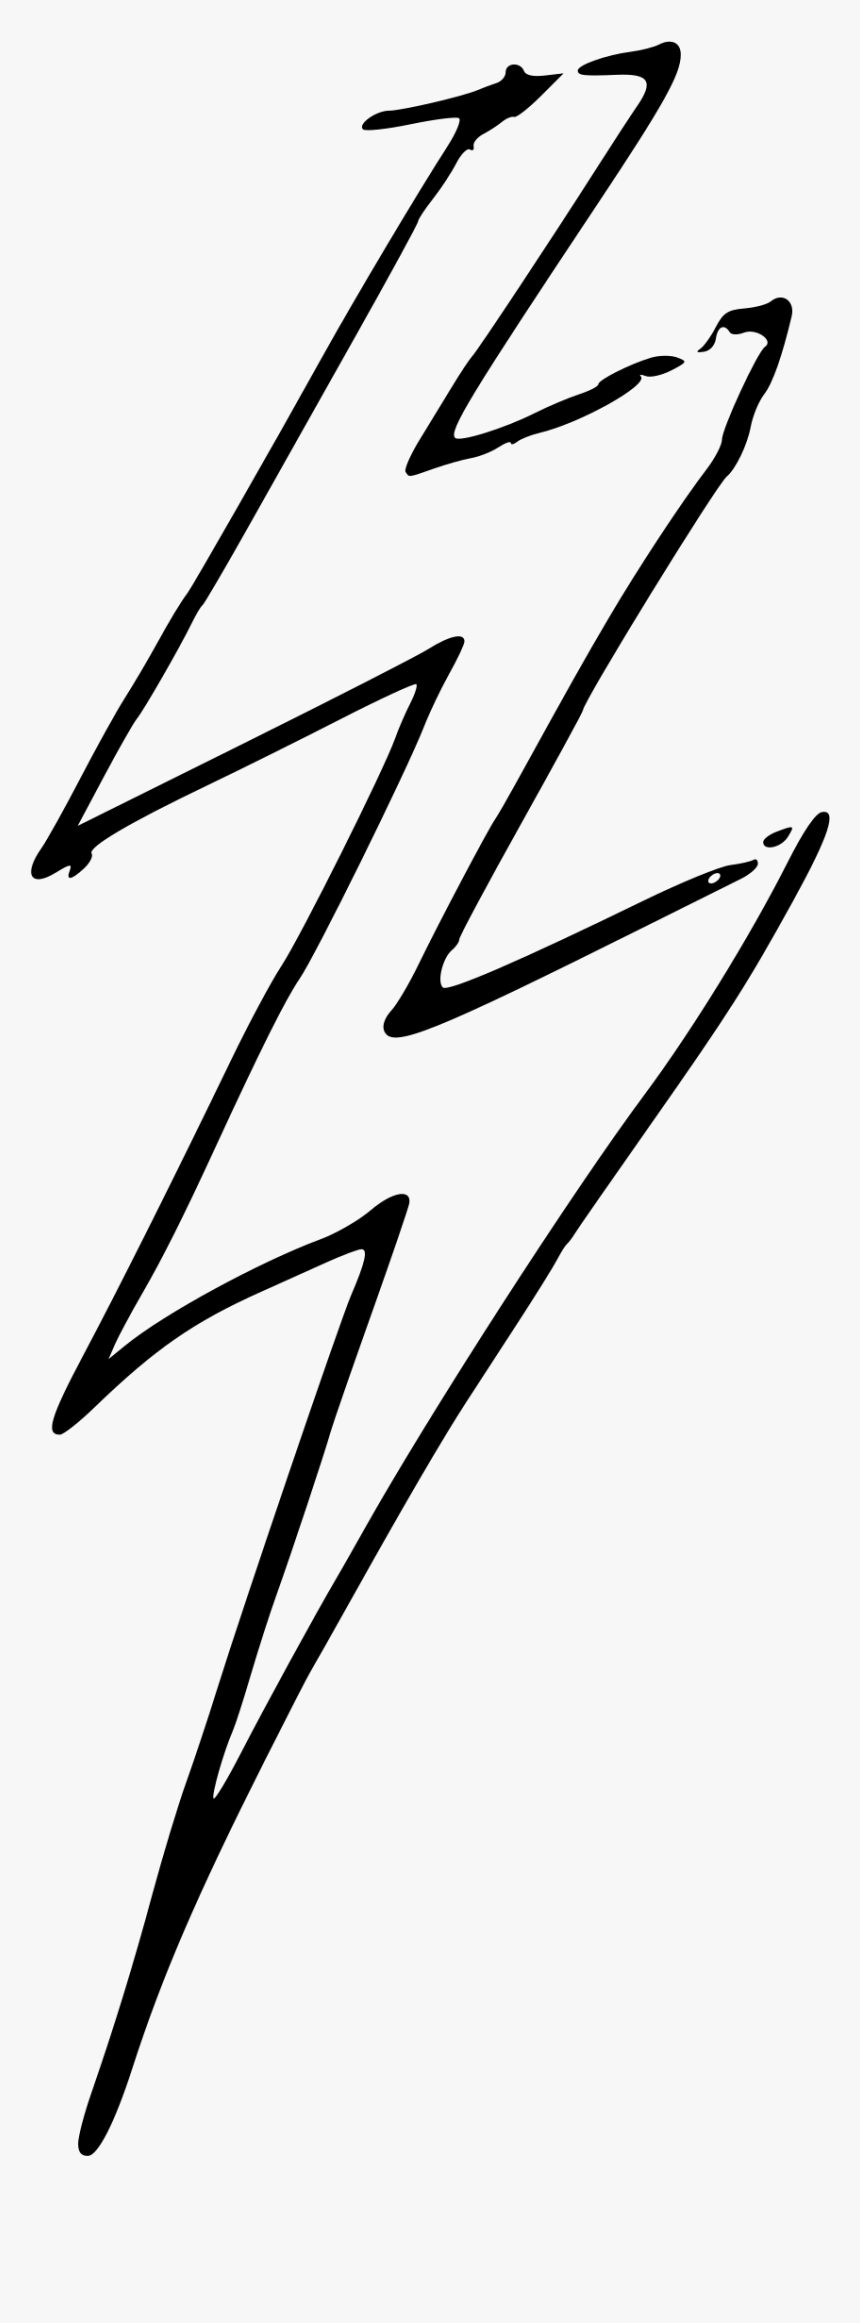 Lightning Bolt Clip Arts - Lightning Bolt Clip Art